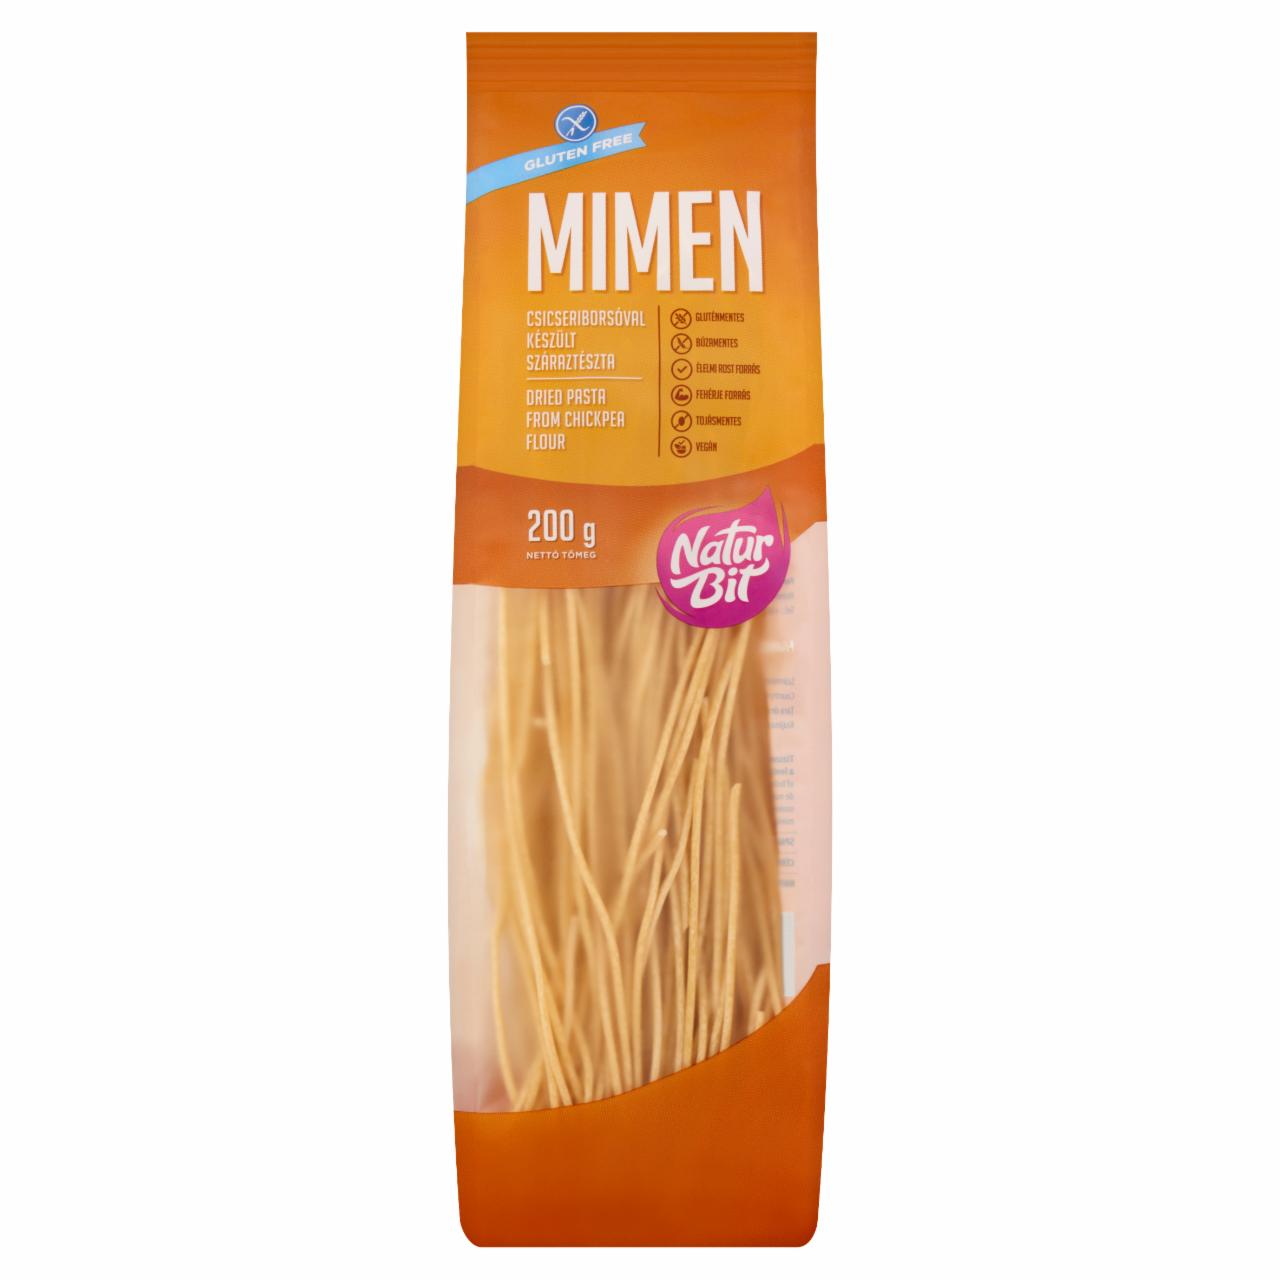 Képek - Naturbit Mimen spagetti gluténmentes, csicseriborsóval készült száraztészta 200 g